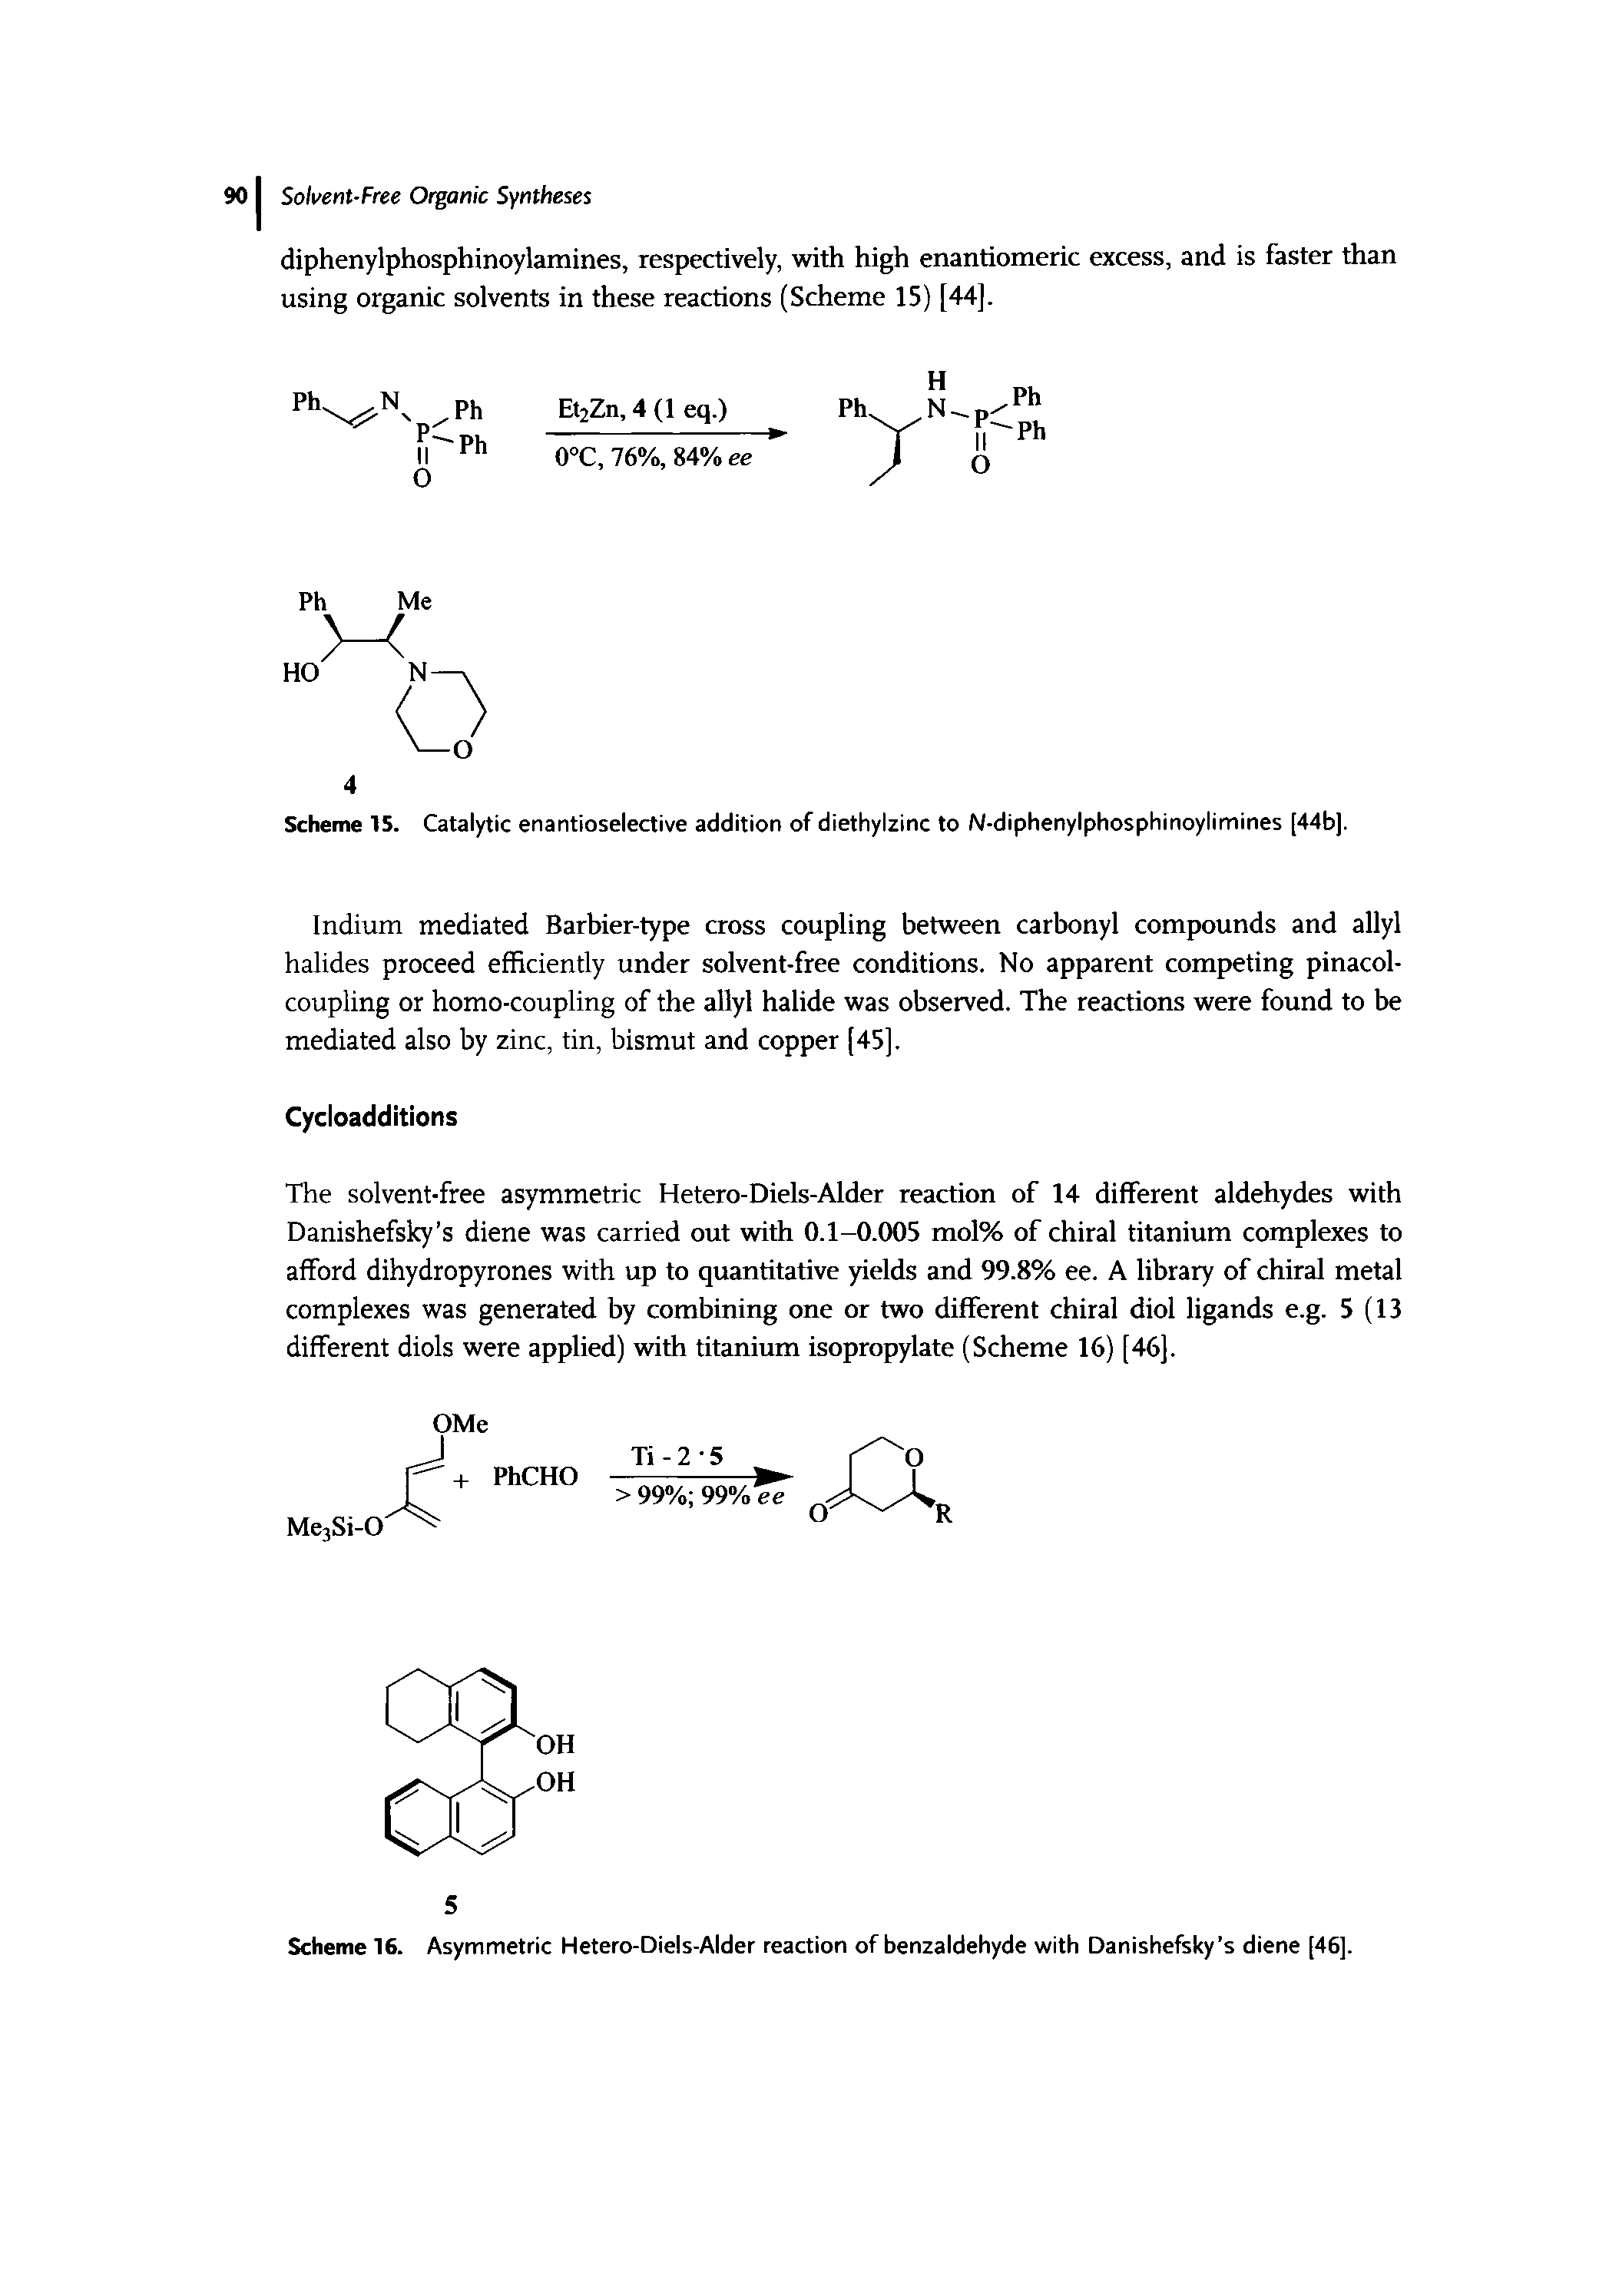 Scheme 16. Asymmetric Hetero-Diels-Alder reaction of benzaldehyde with Danishefsky s diene [46].